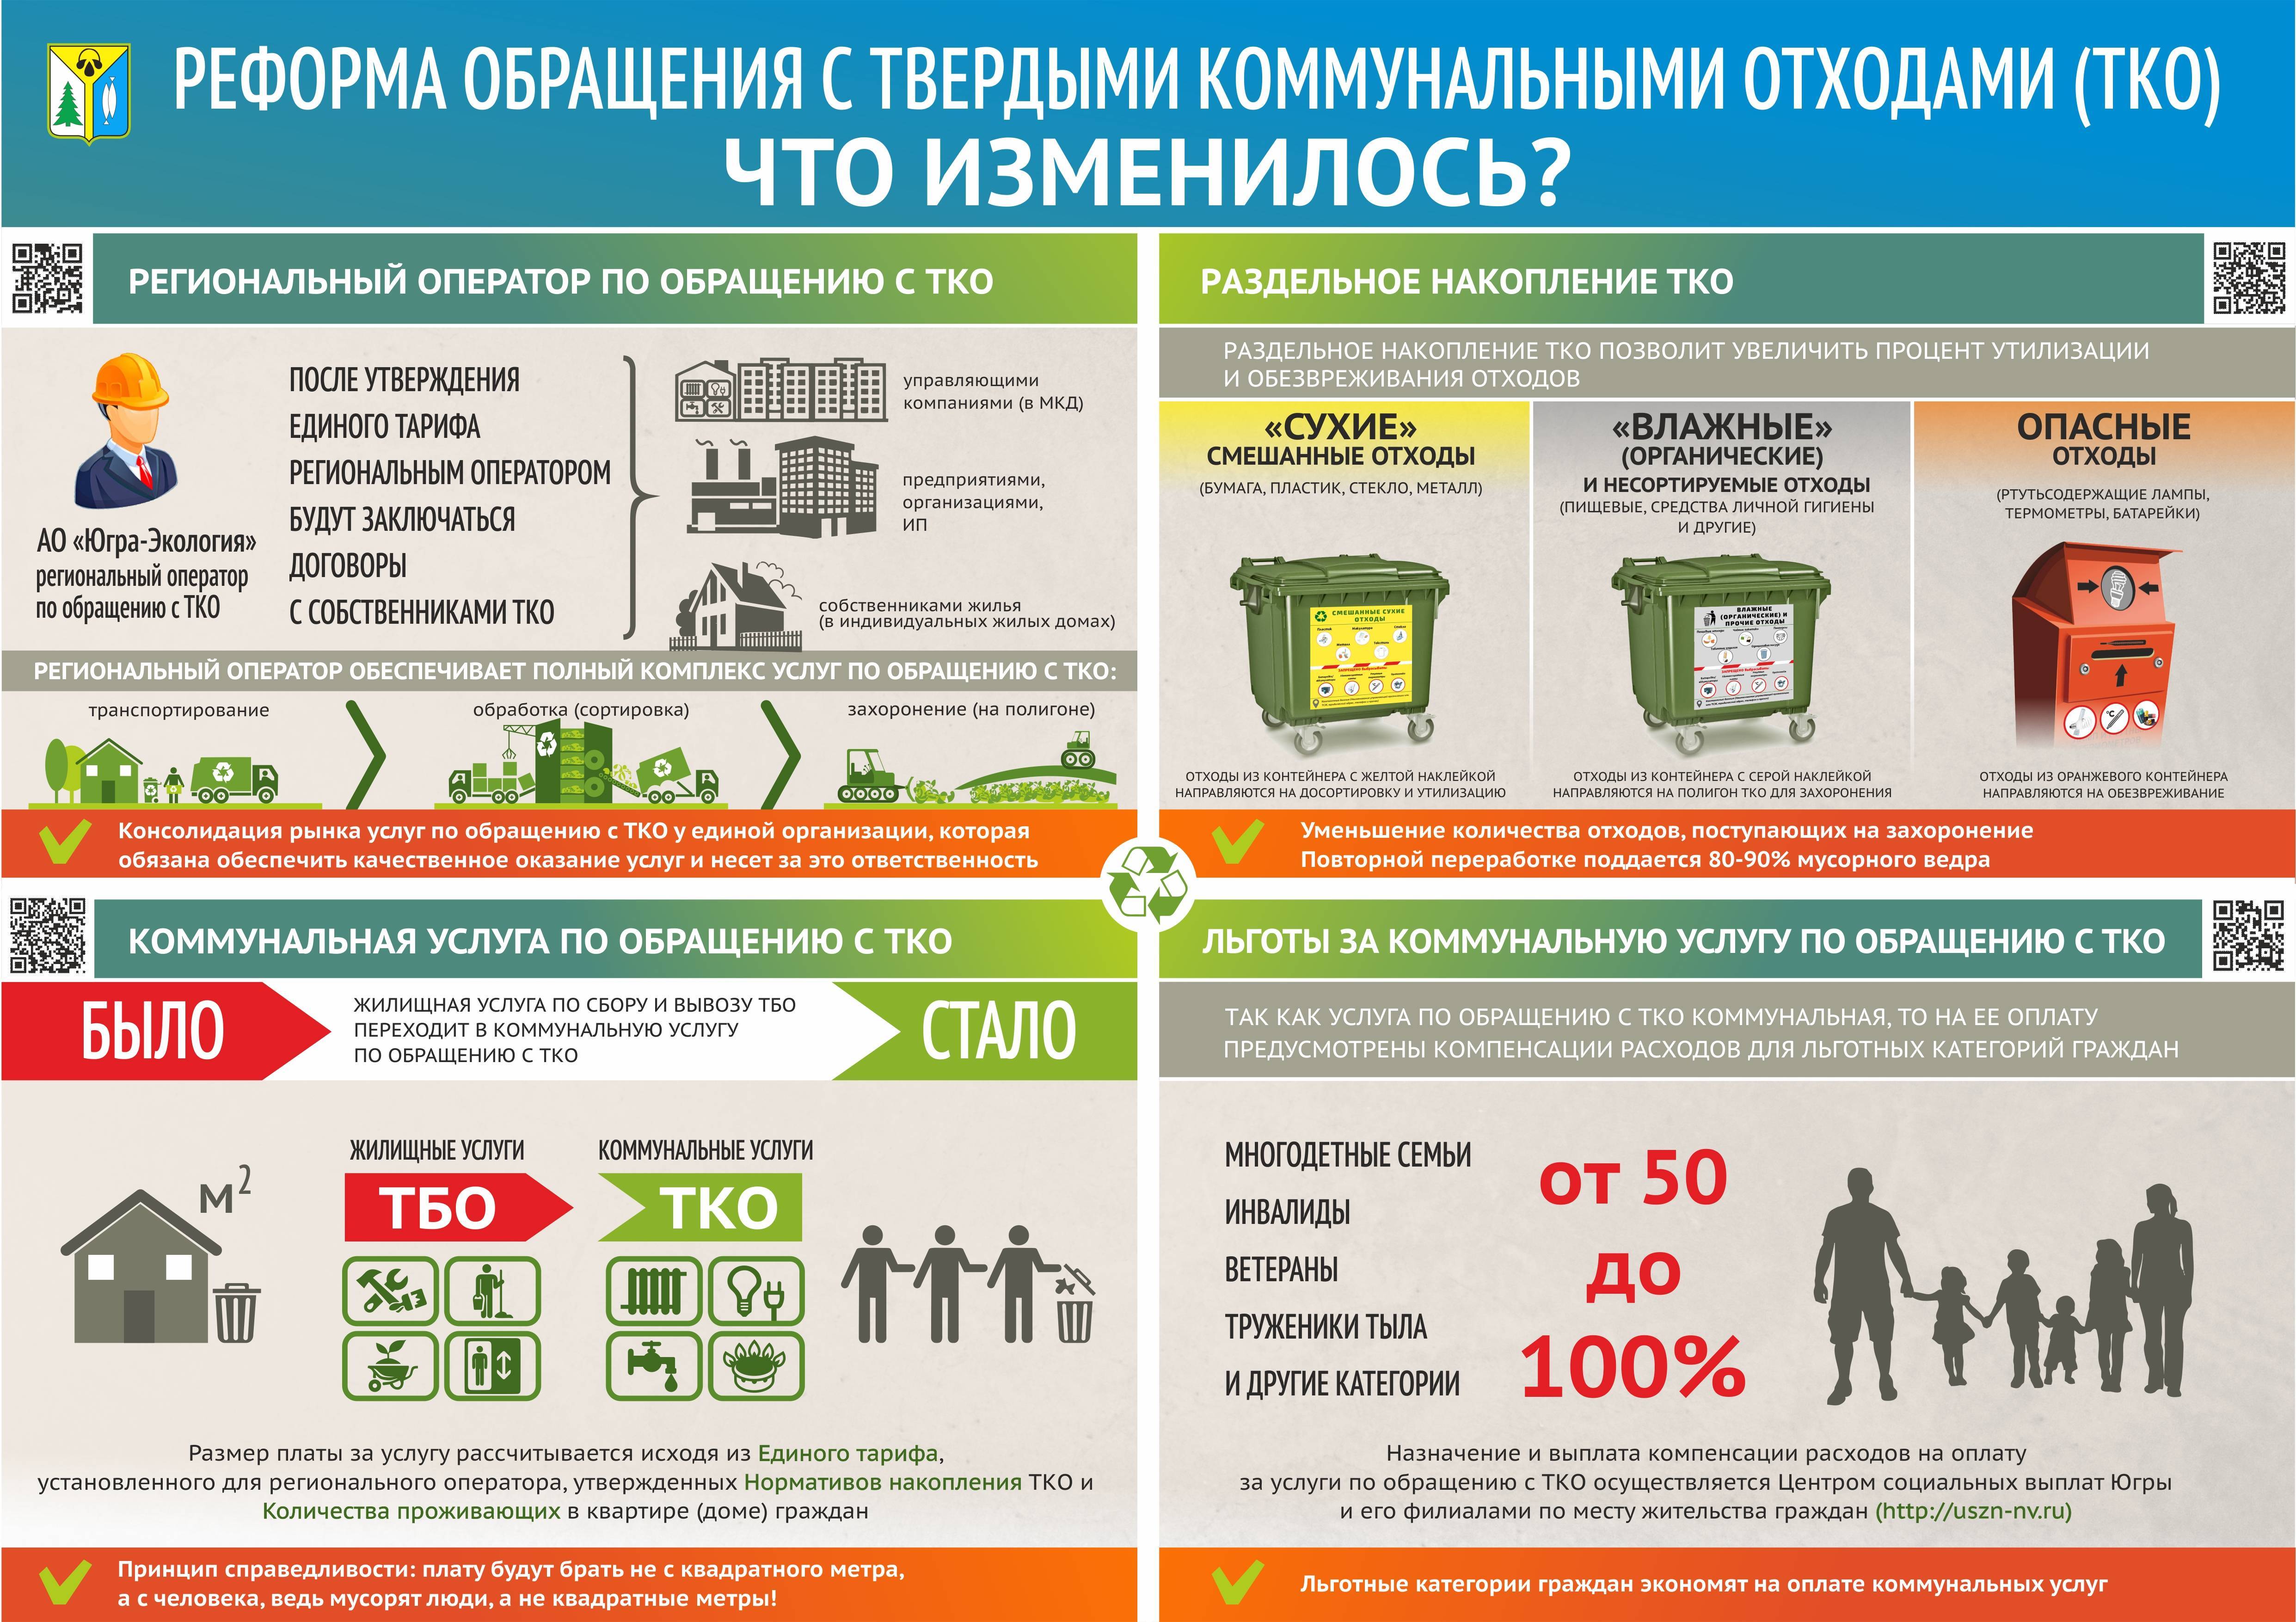 В Правительстве РФ обсуждают новый способ оплаты за ТКО